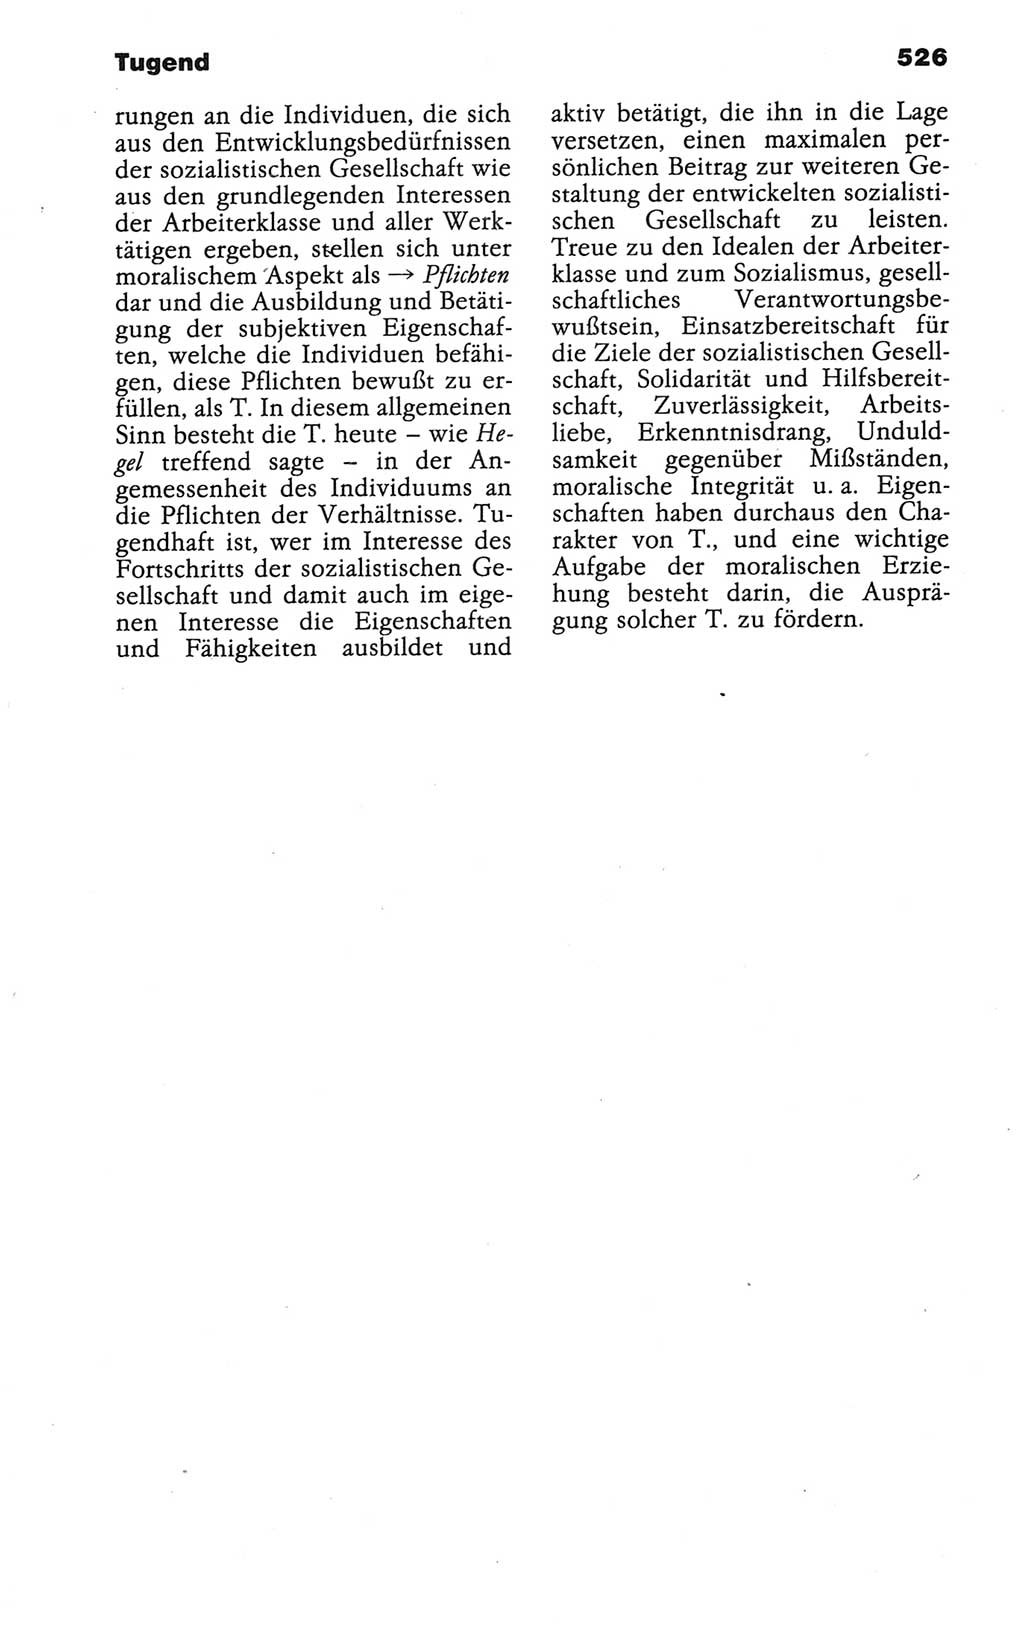 Wörterbuch der marxistisch-leninistischen Philosophie [Deutsche Demokratische Republik (DDR)] 1986, Seite 526 (Wb. ML Phil. DDR 1986, S. 526)